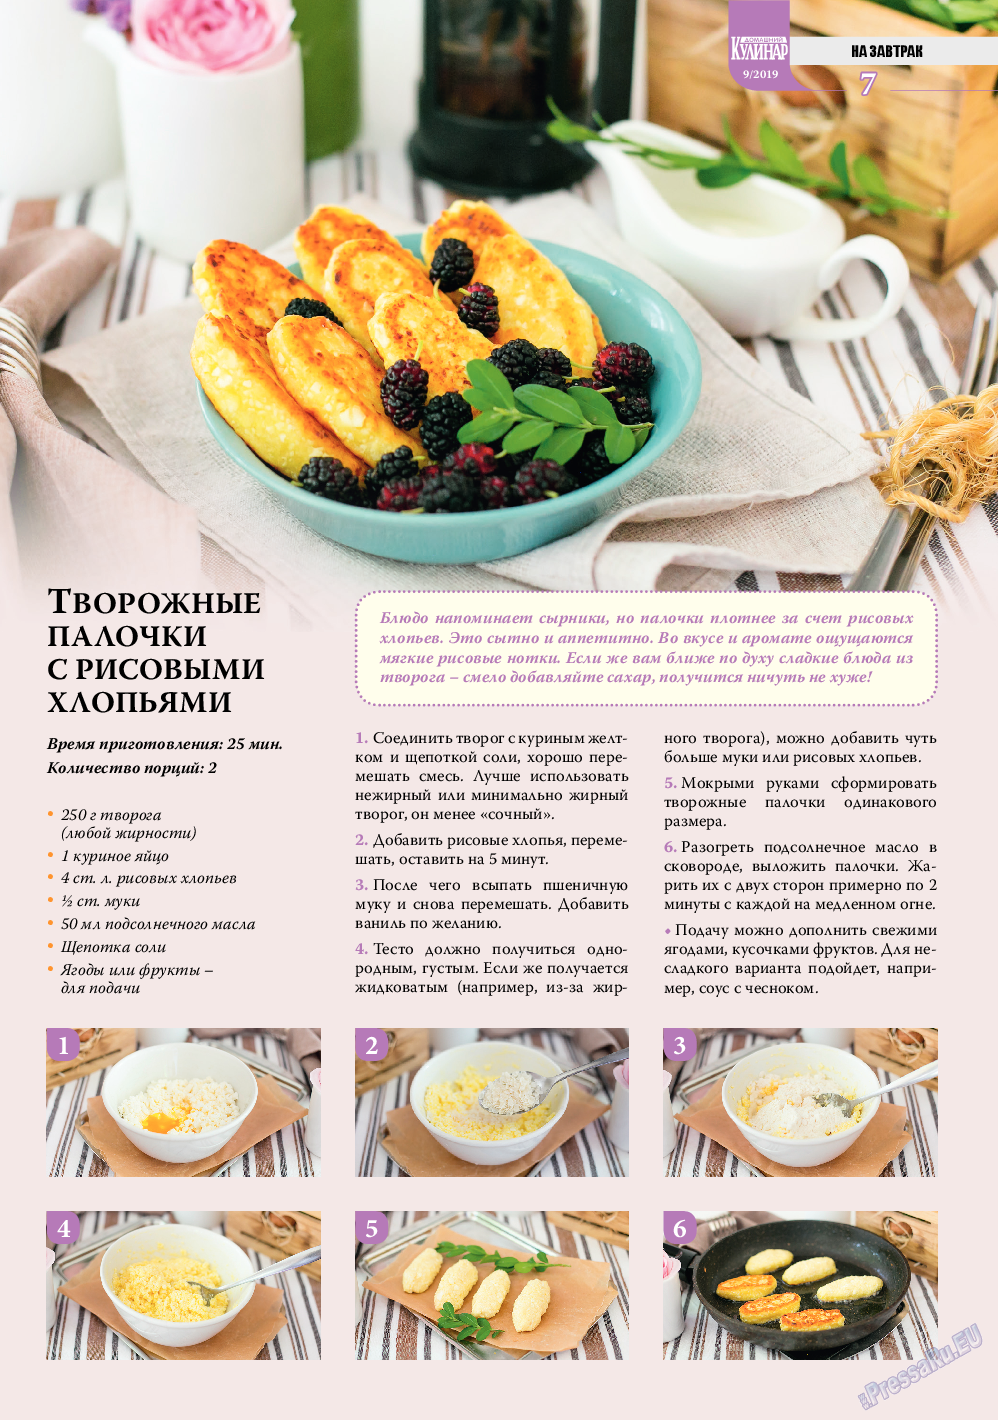 Домашний кулинар, журнал. 2019 №9 стр.7